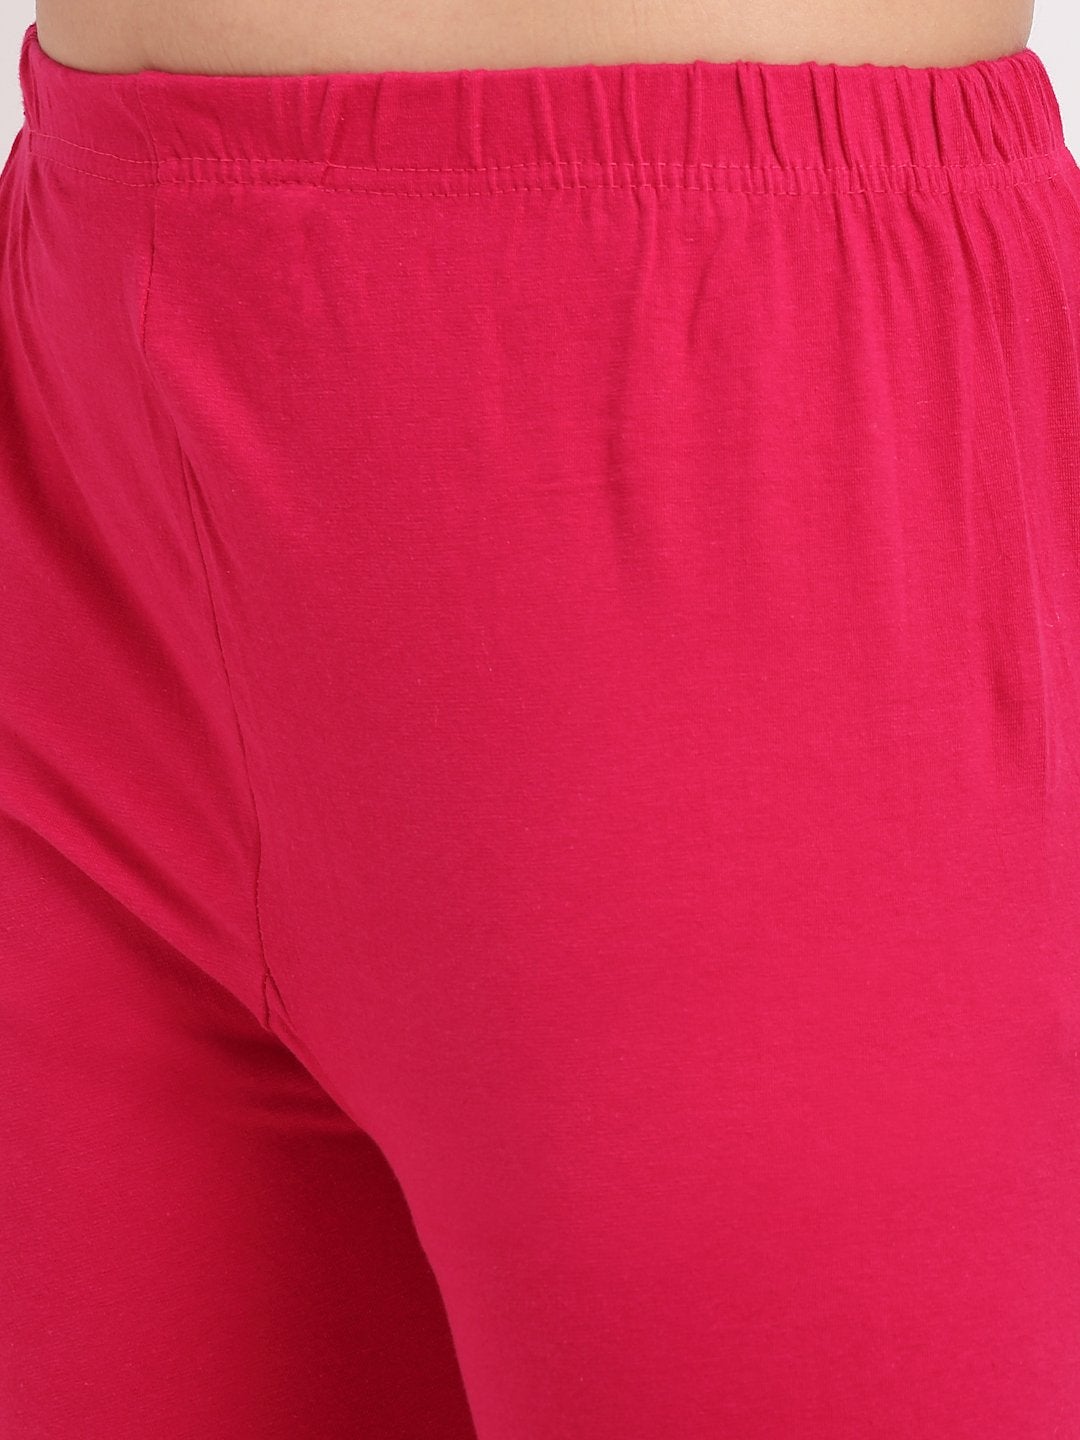 Women Dark Pink Georgette Banarsi Anarkali With Leggings & Dupatta by Anokherang (3pcs Set)